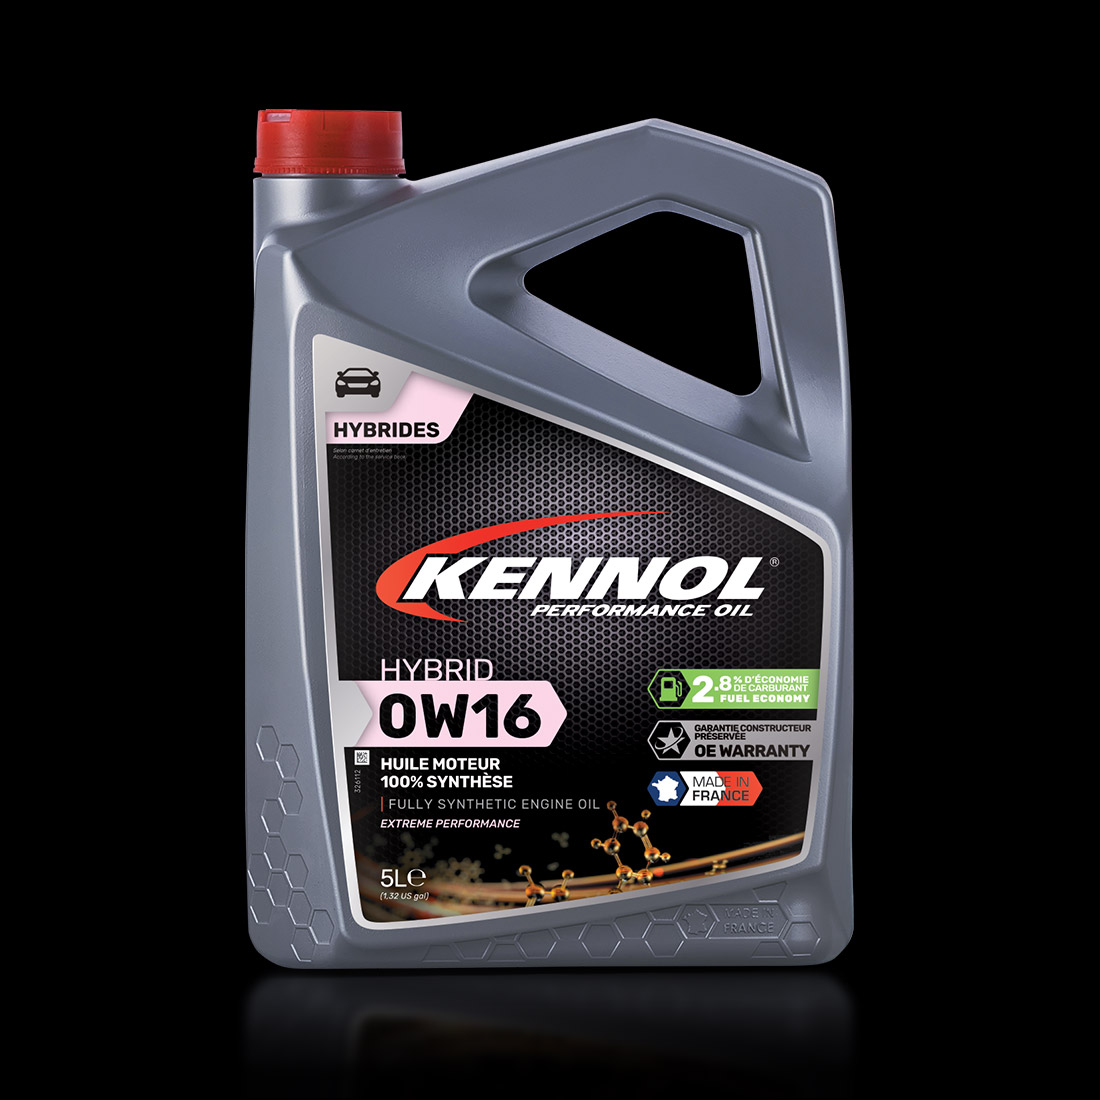 Hybrid 0w16 Kennol Performance Oil